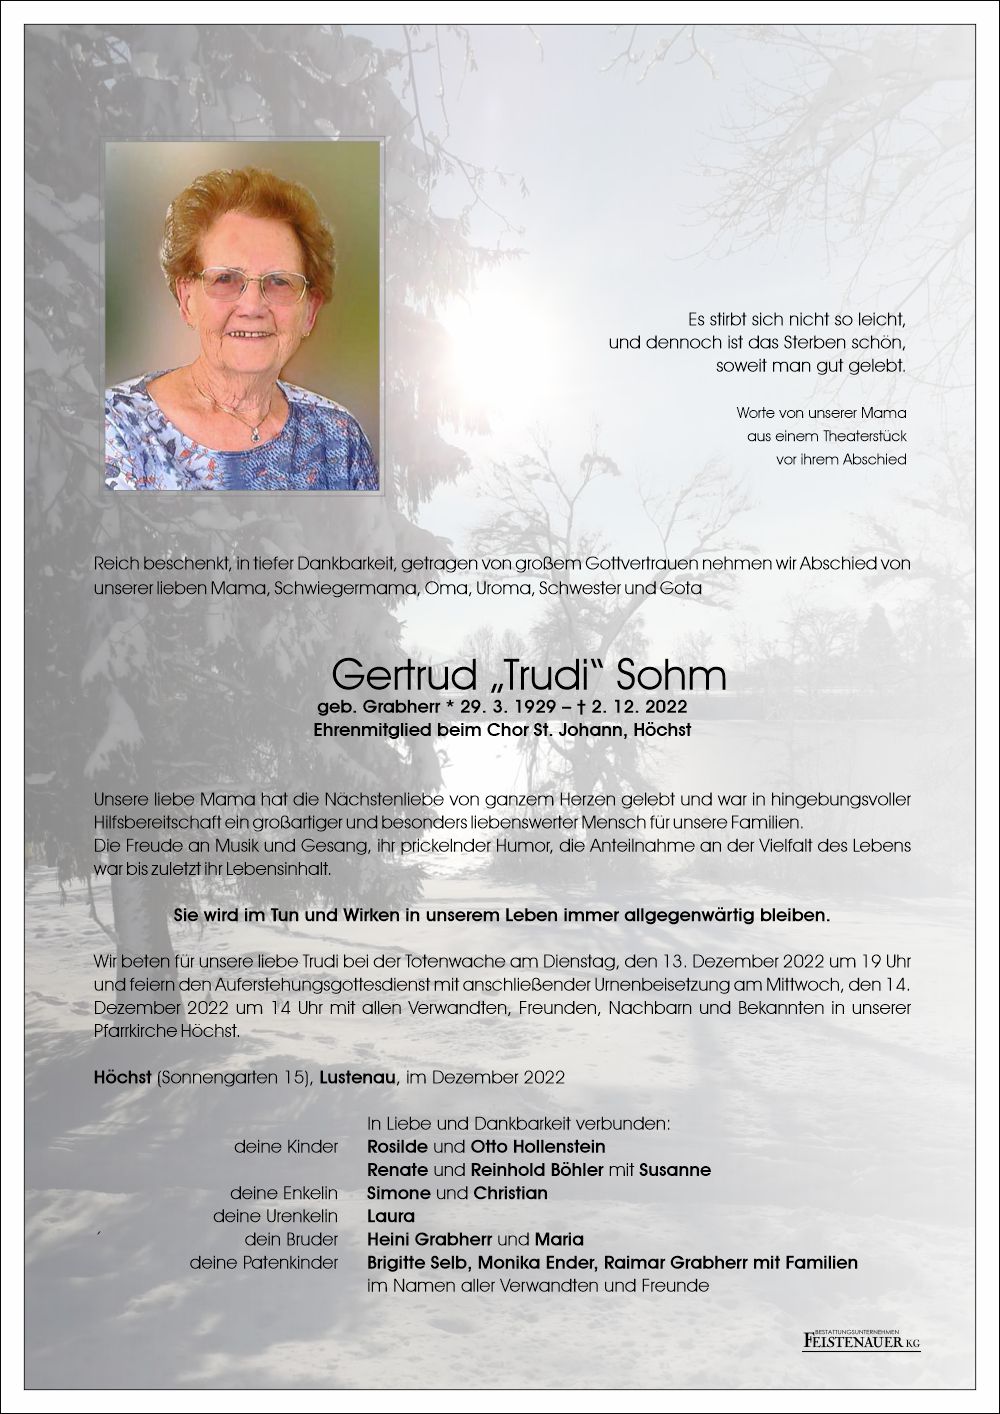 Gertrud "Trudi" Sohm